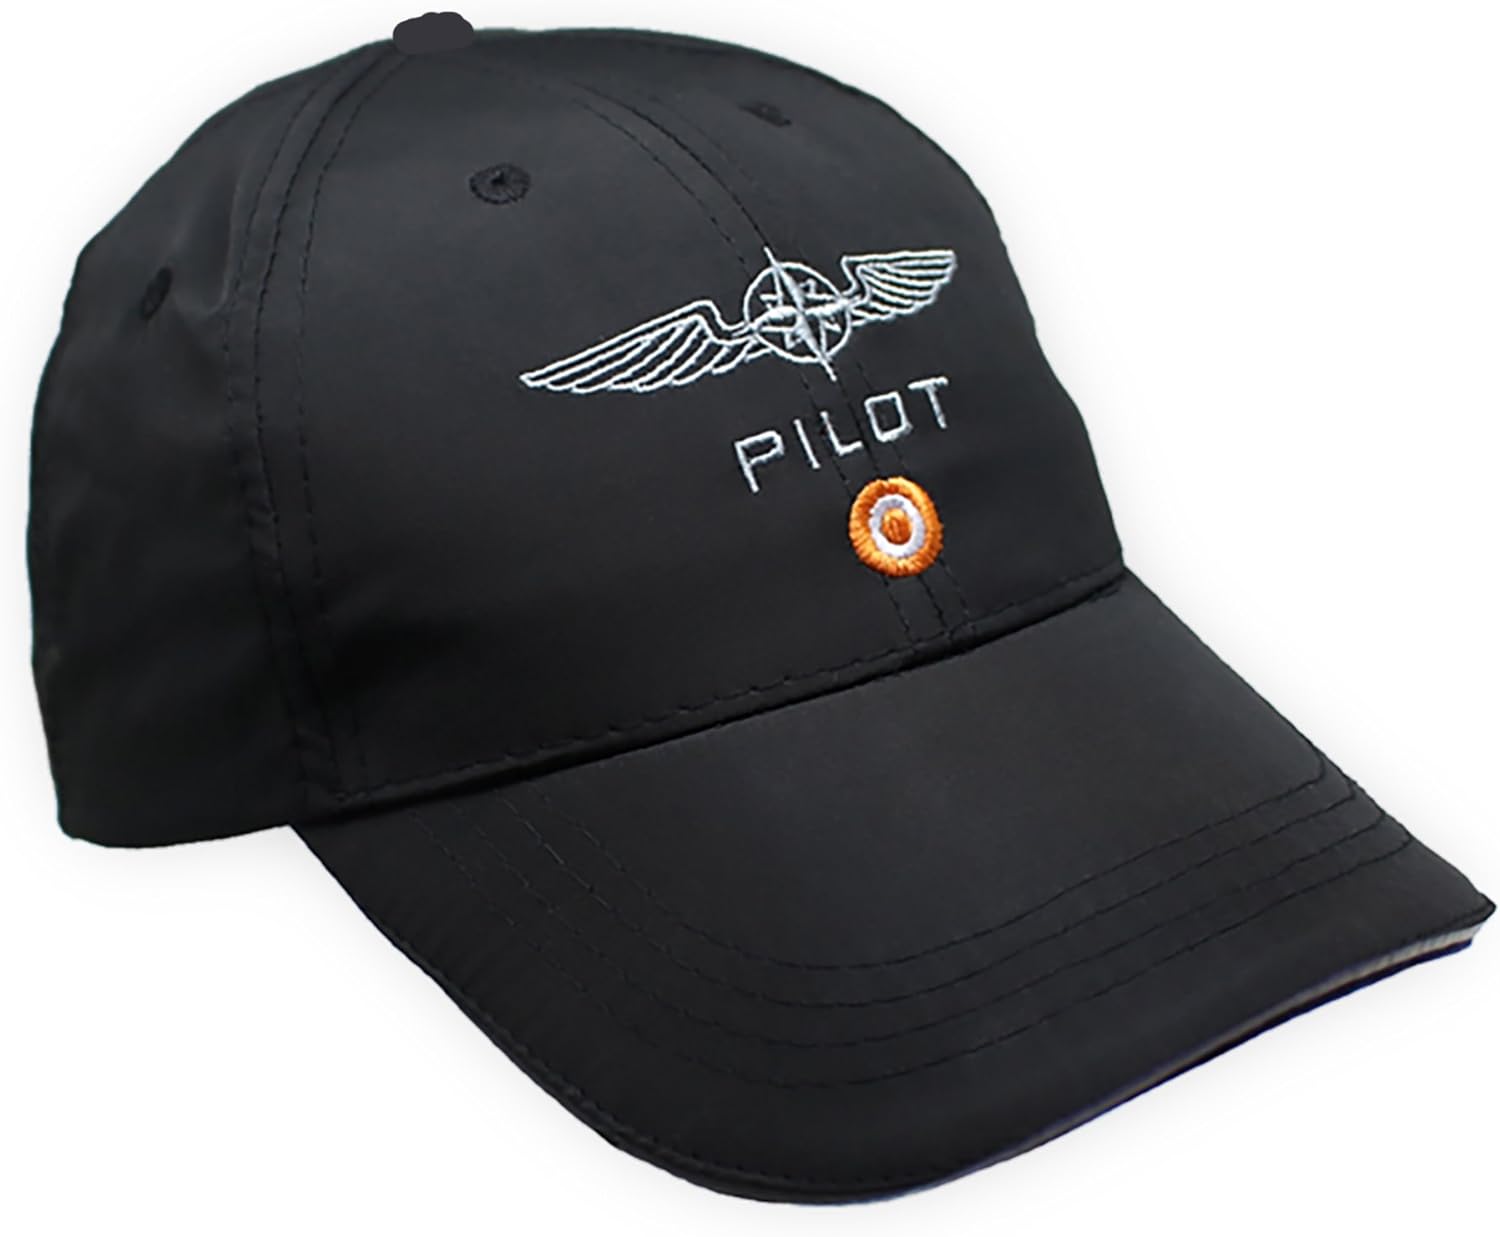 Pilot's cap